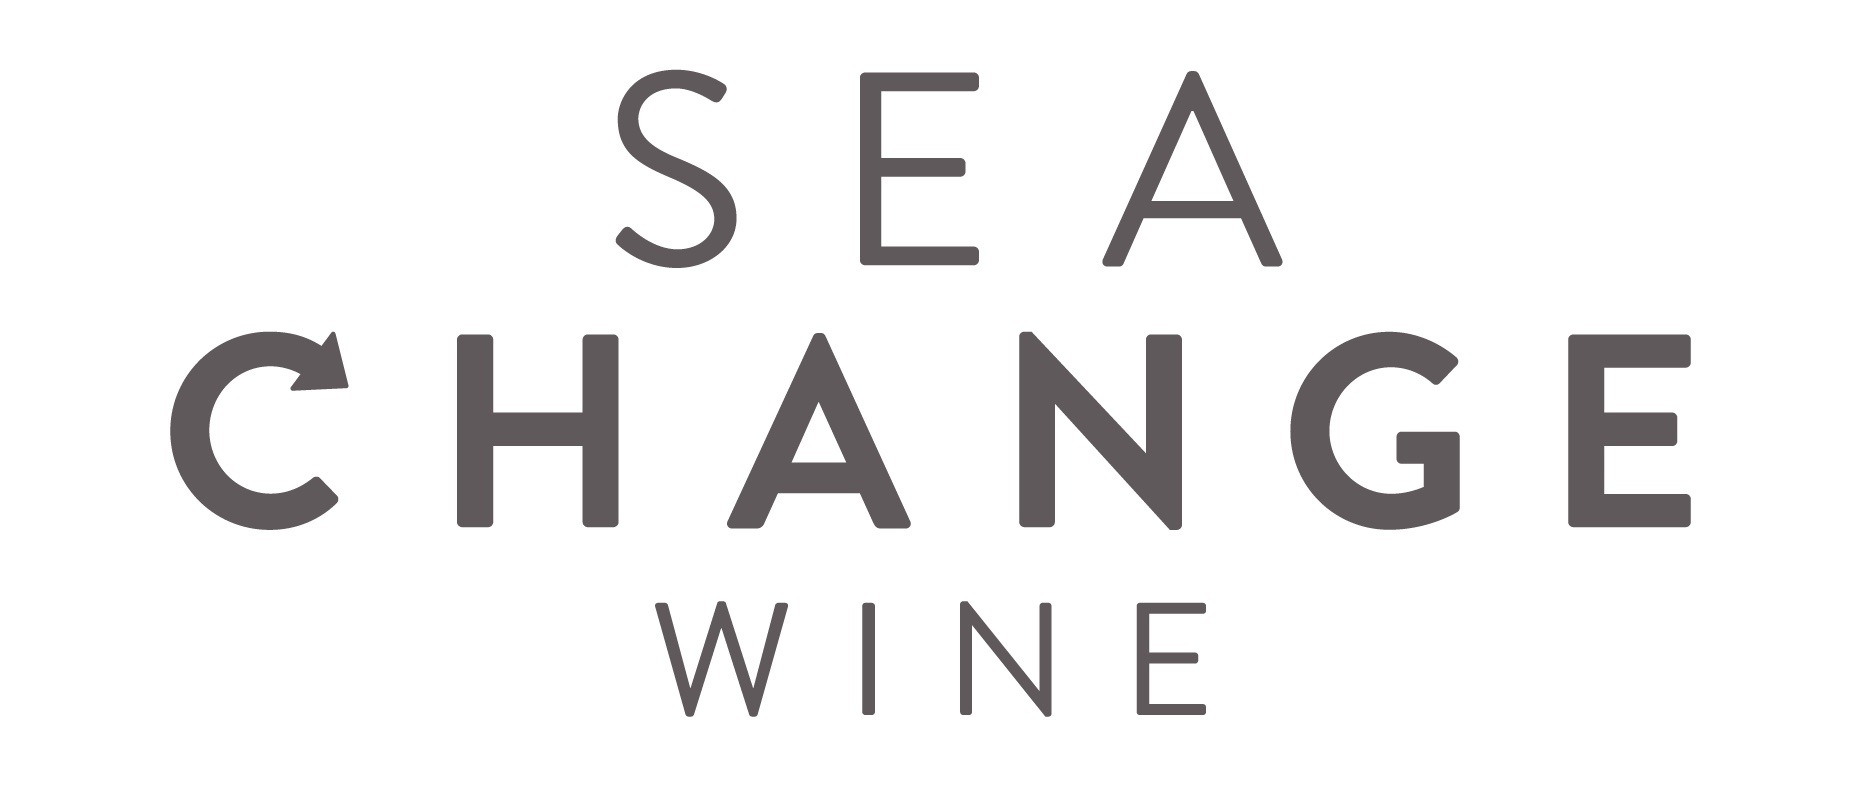 Sea Change Wine Logo - for Ocean Generation